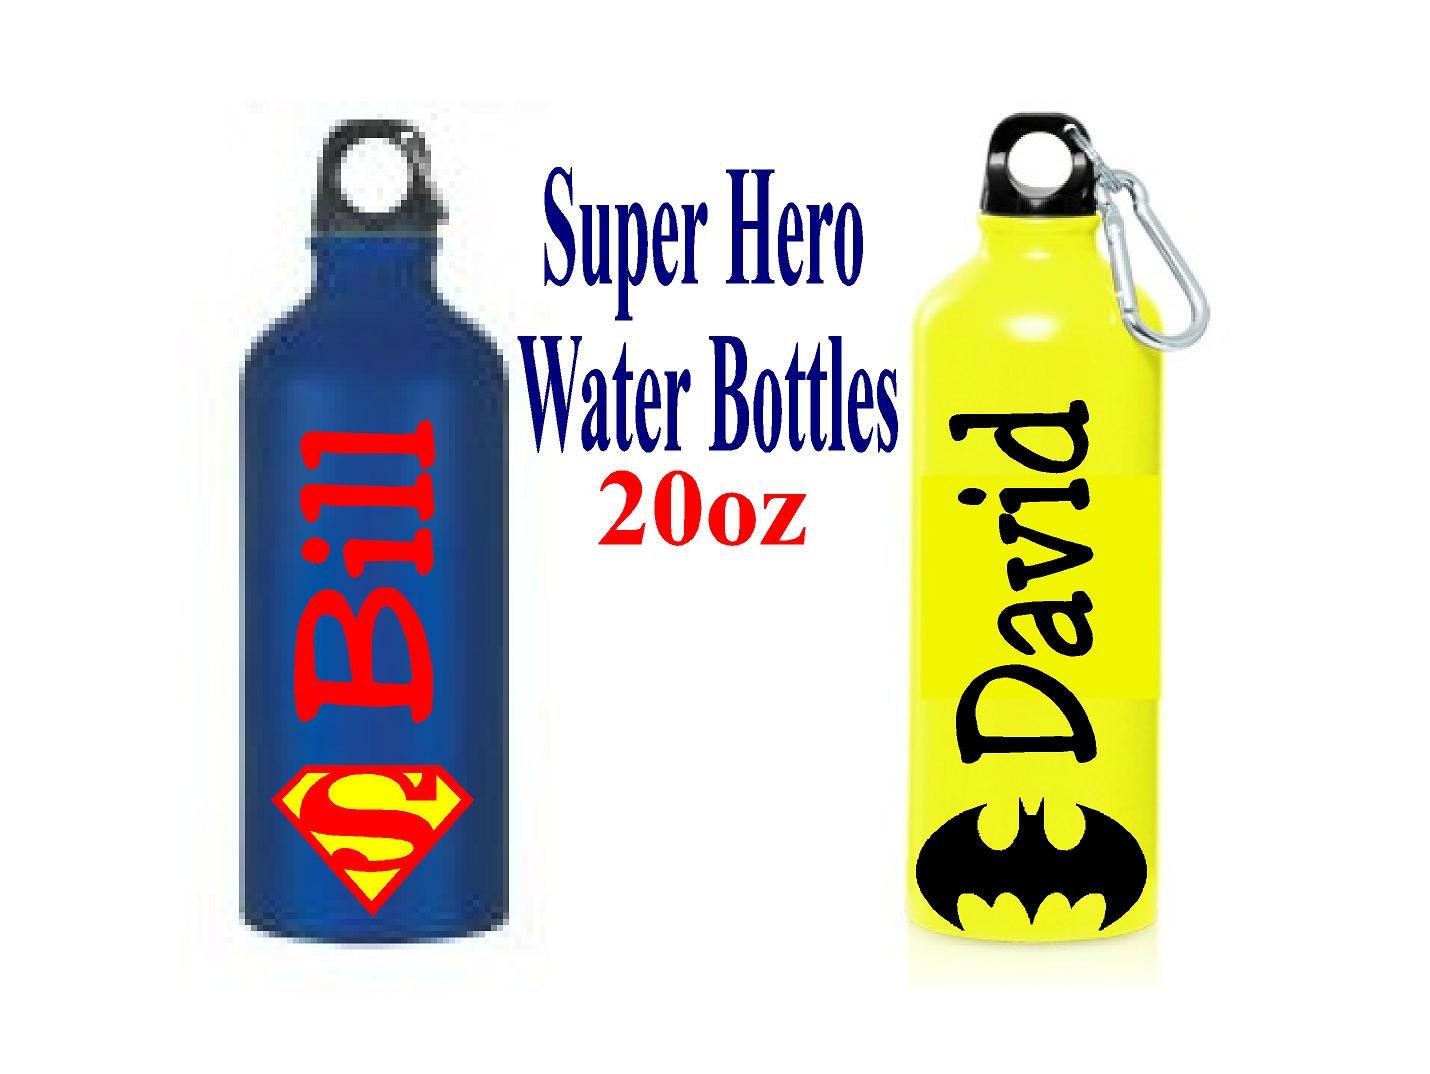 Batman Water Bottle